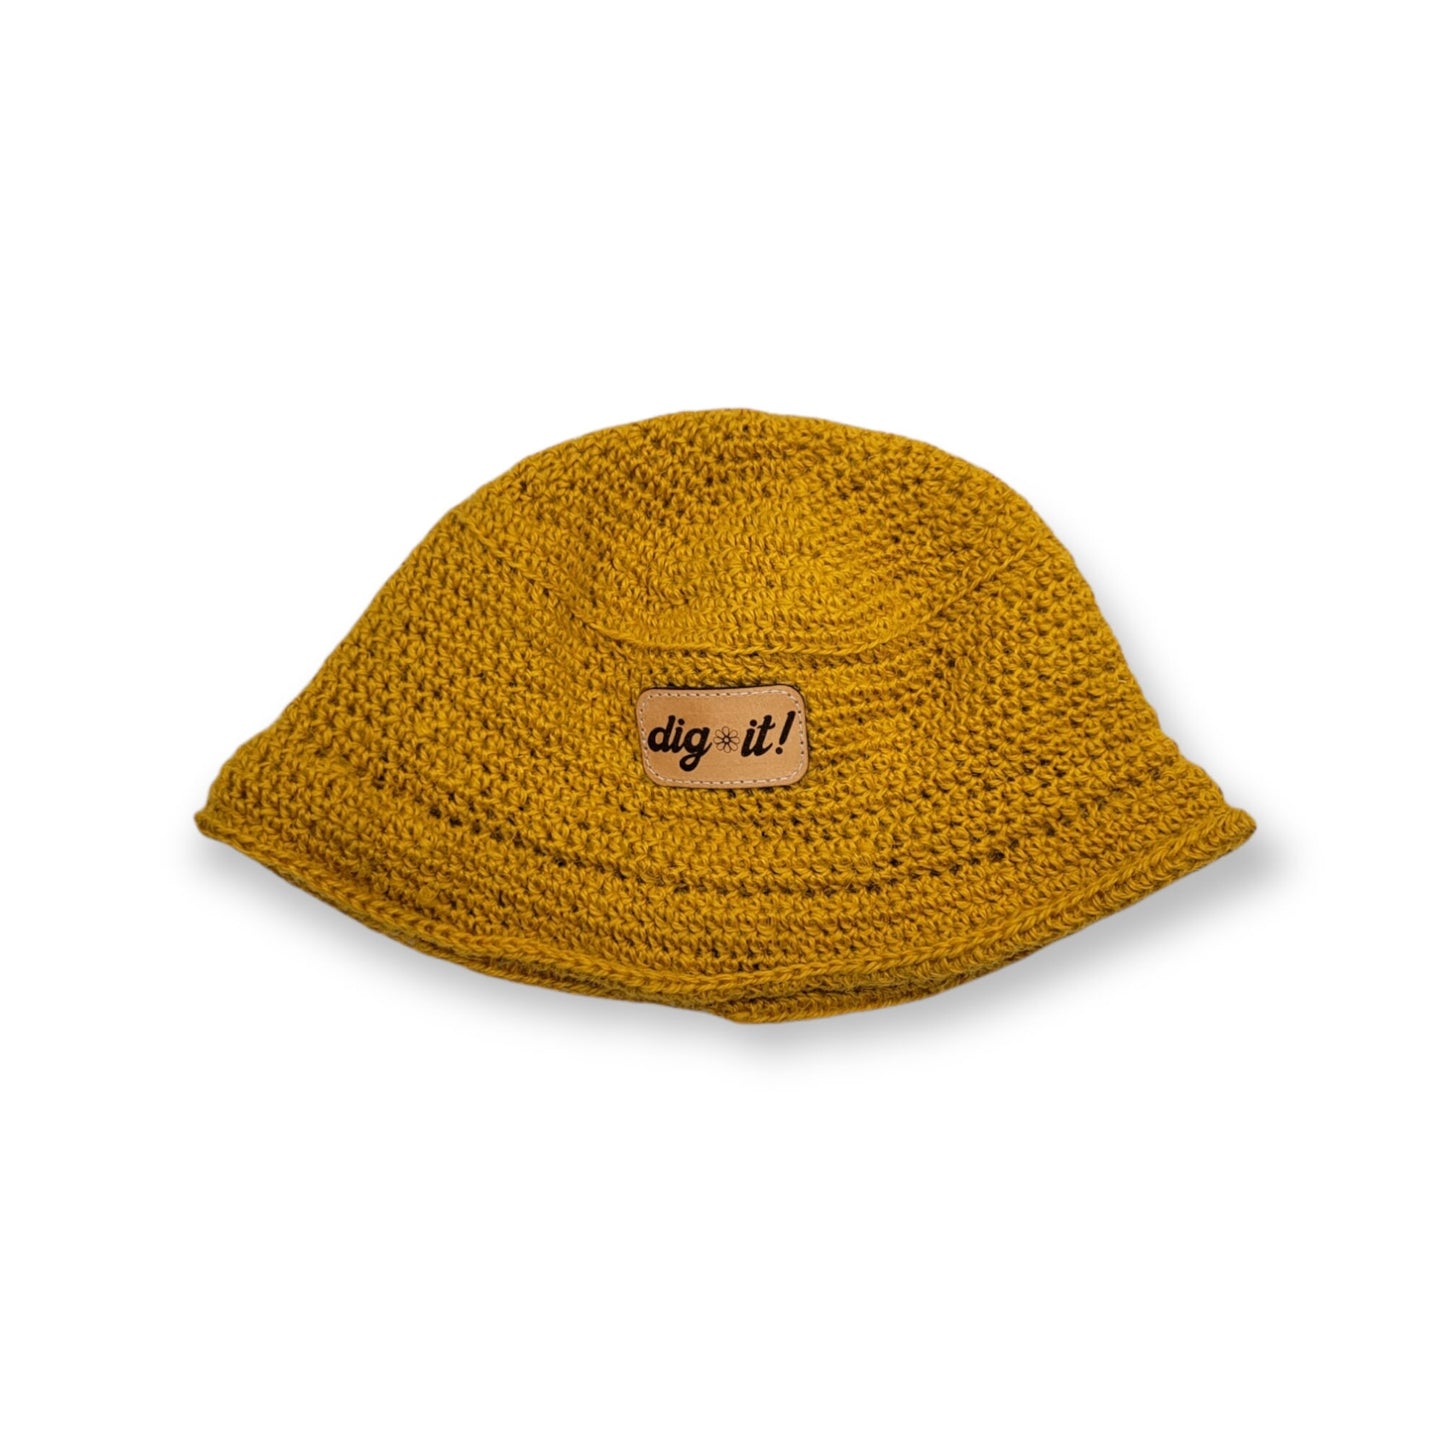 Hemp Bucket Hat - Gardening Hat - Dig It - Sun Hat- Spring Summer Hemp Hat Bucket